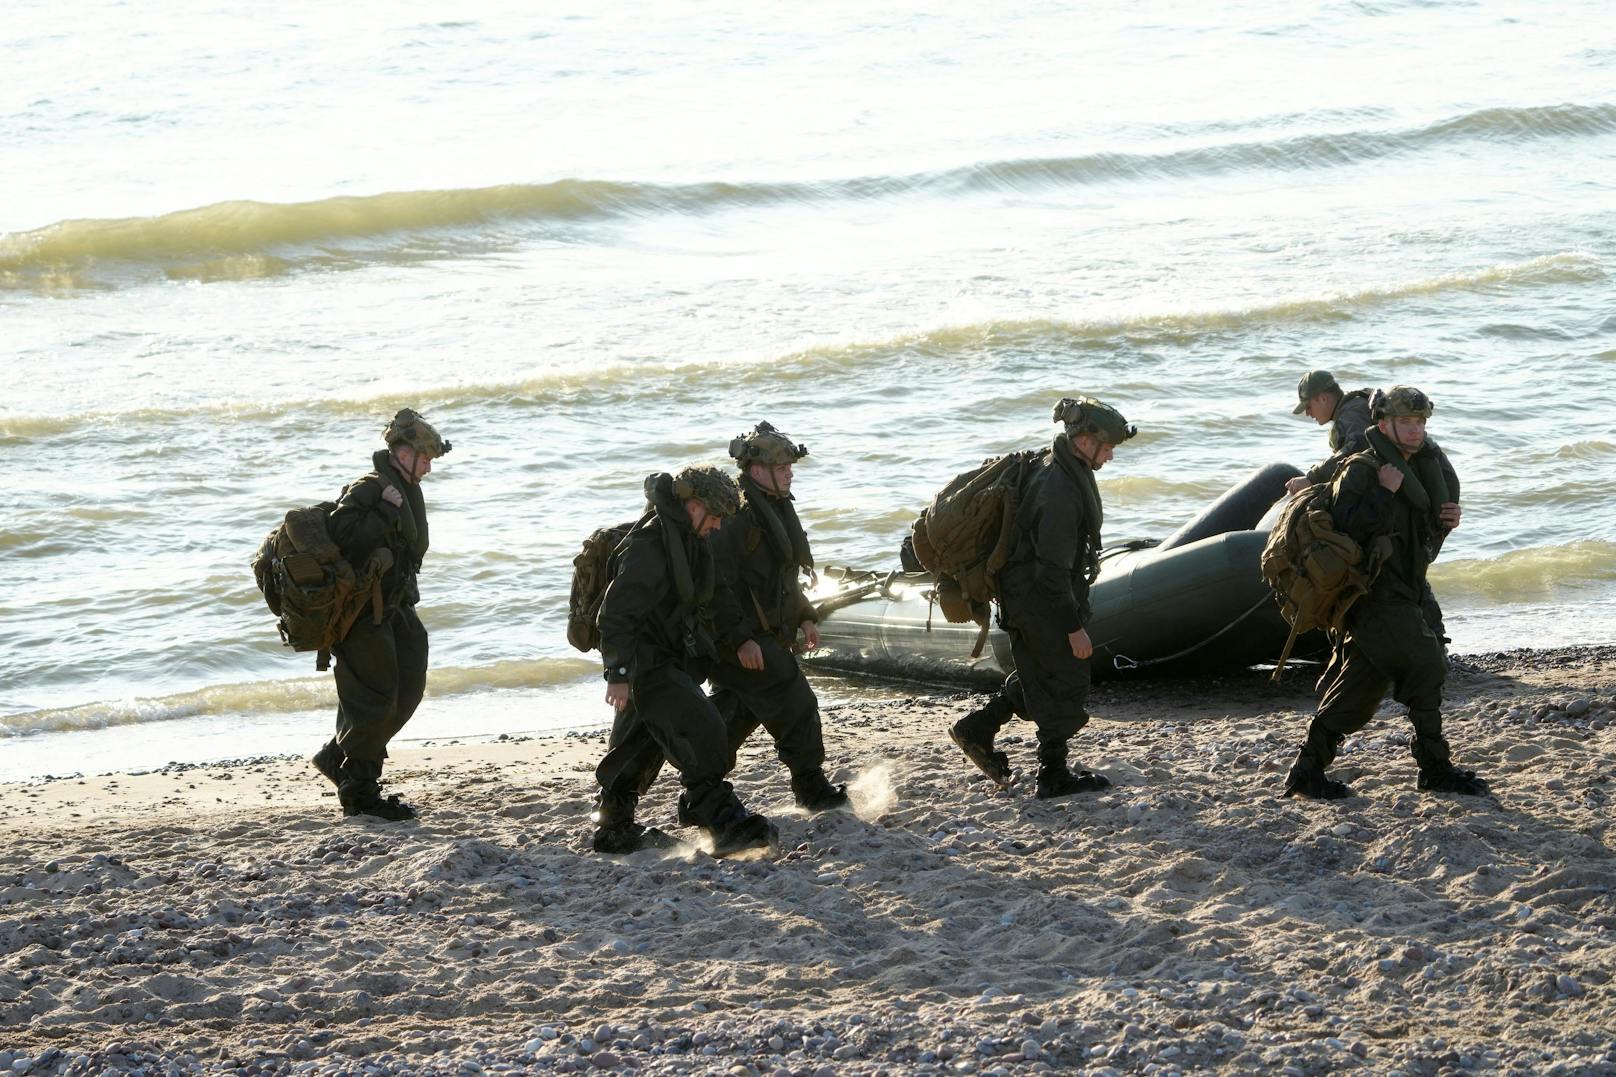 Ukrainische Einheiten haben eine amphibische Landung auf der Krim absolviert. (Symbolbild)